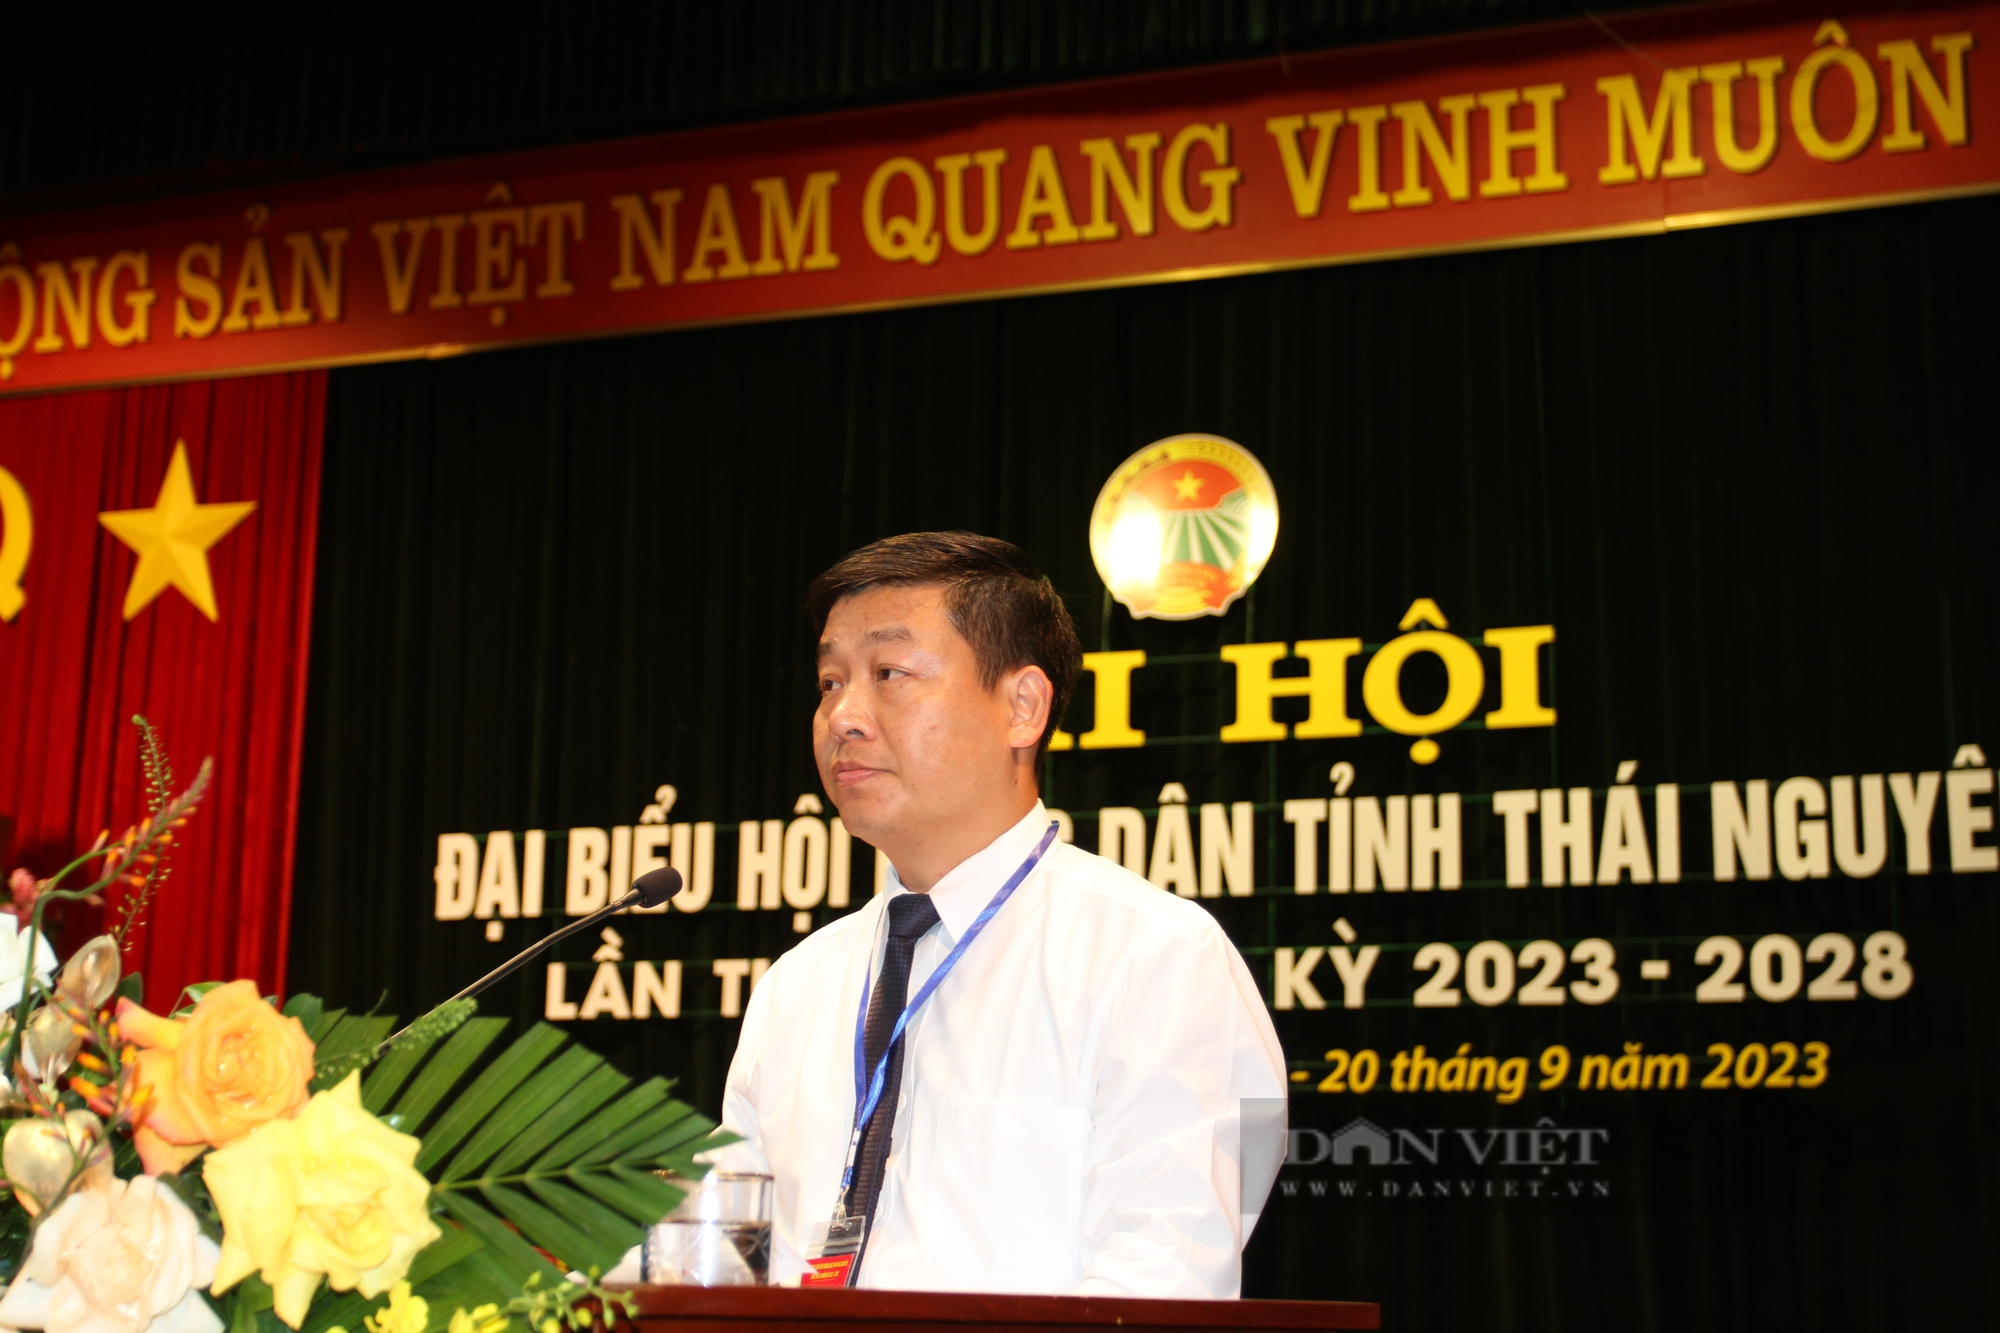 Ông Lương Quốc Đoàn - Chủ tịch BCH Trung ương Hội Nông dân Việt Nam sẽ dự Đại hội Hội Nông dân tỉnh Thái Nguyên - Ảnh 2.